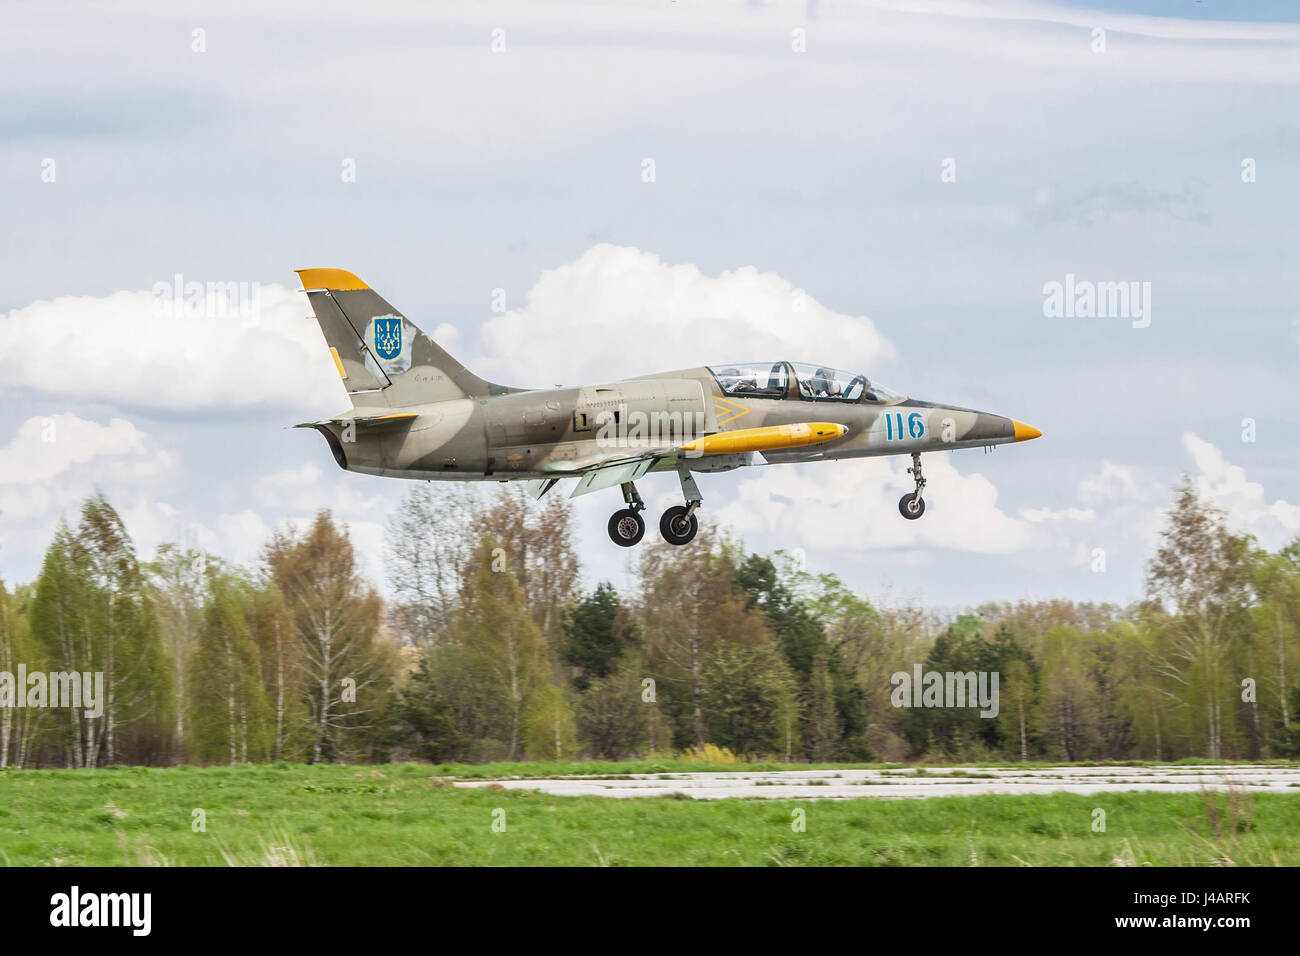 Region Kiew - 24. April 2012: Ukraine Luftwaffe Aero l-39 Albatros Trainer Flugzeug Landung auf der Piste nach einem anderen Flug Stockfoto